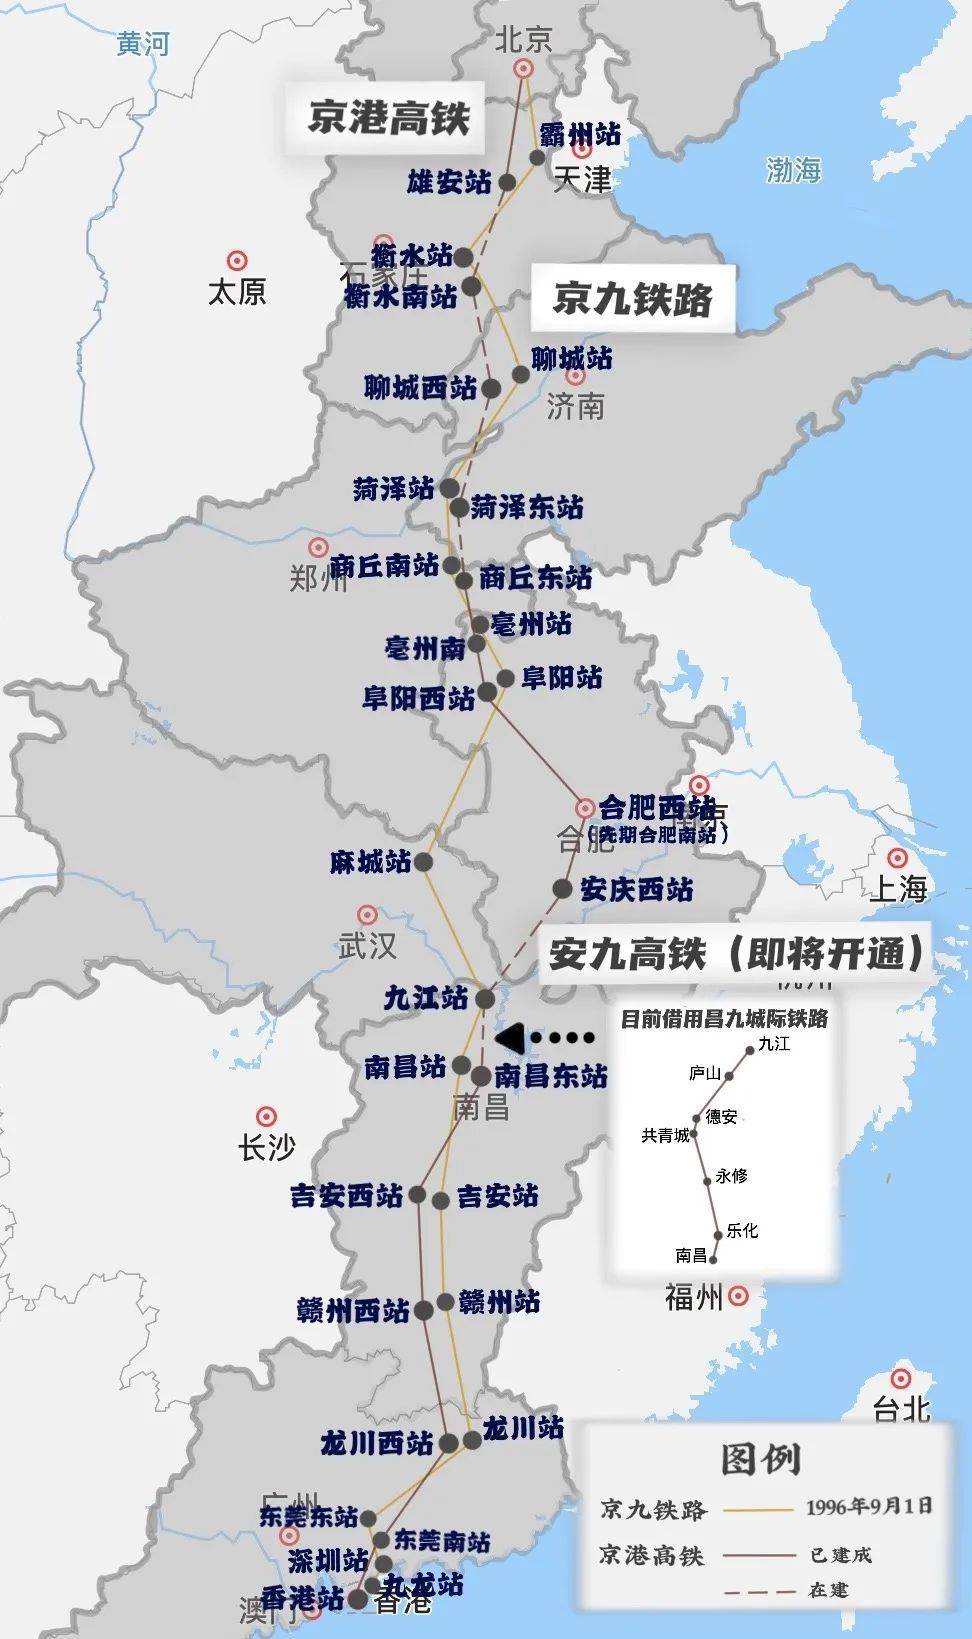 湖北与安徽“暗战”京港高铁多时，如今安徽抢先一步，这将大大弥补安徽人对当年京九铁路未能顺直过境安徽的遗憾。